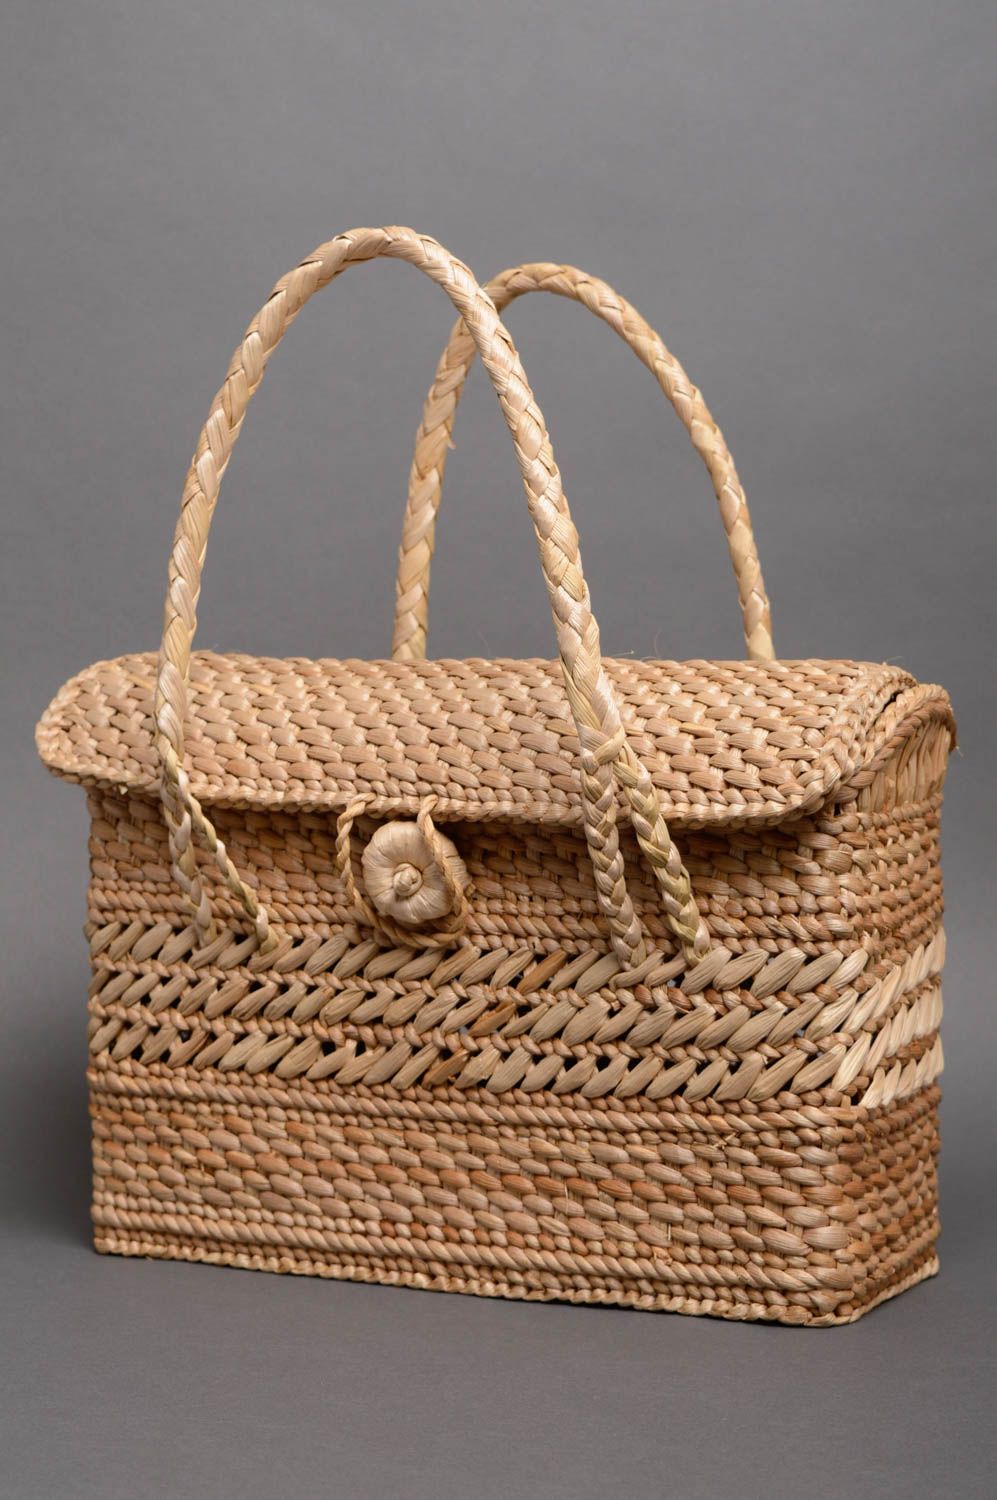 Beautiful woven basket purse photo 1